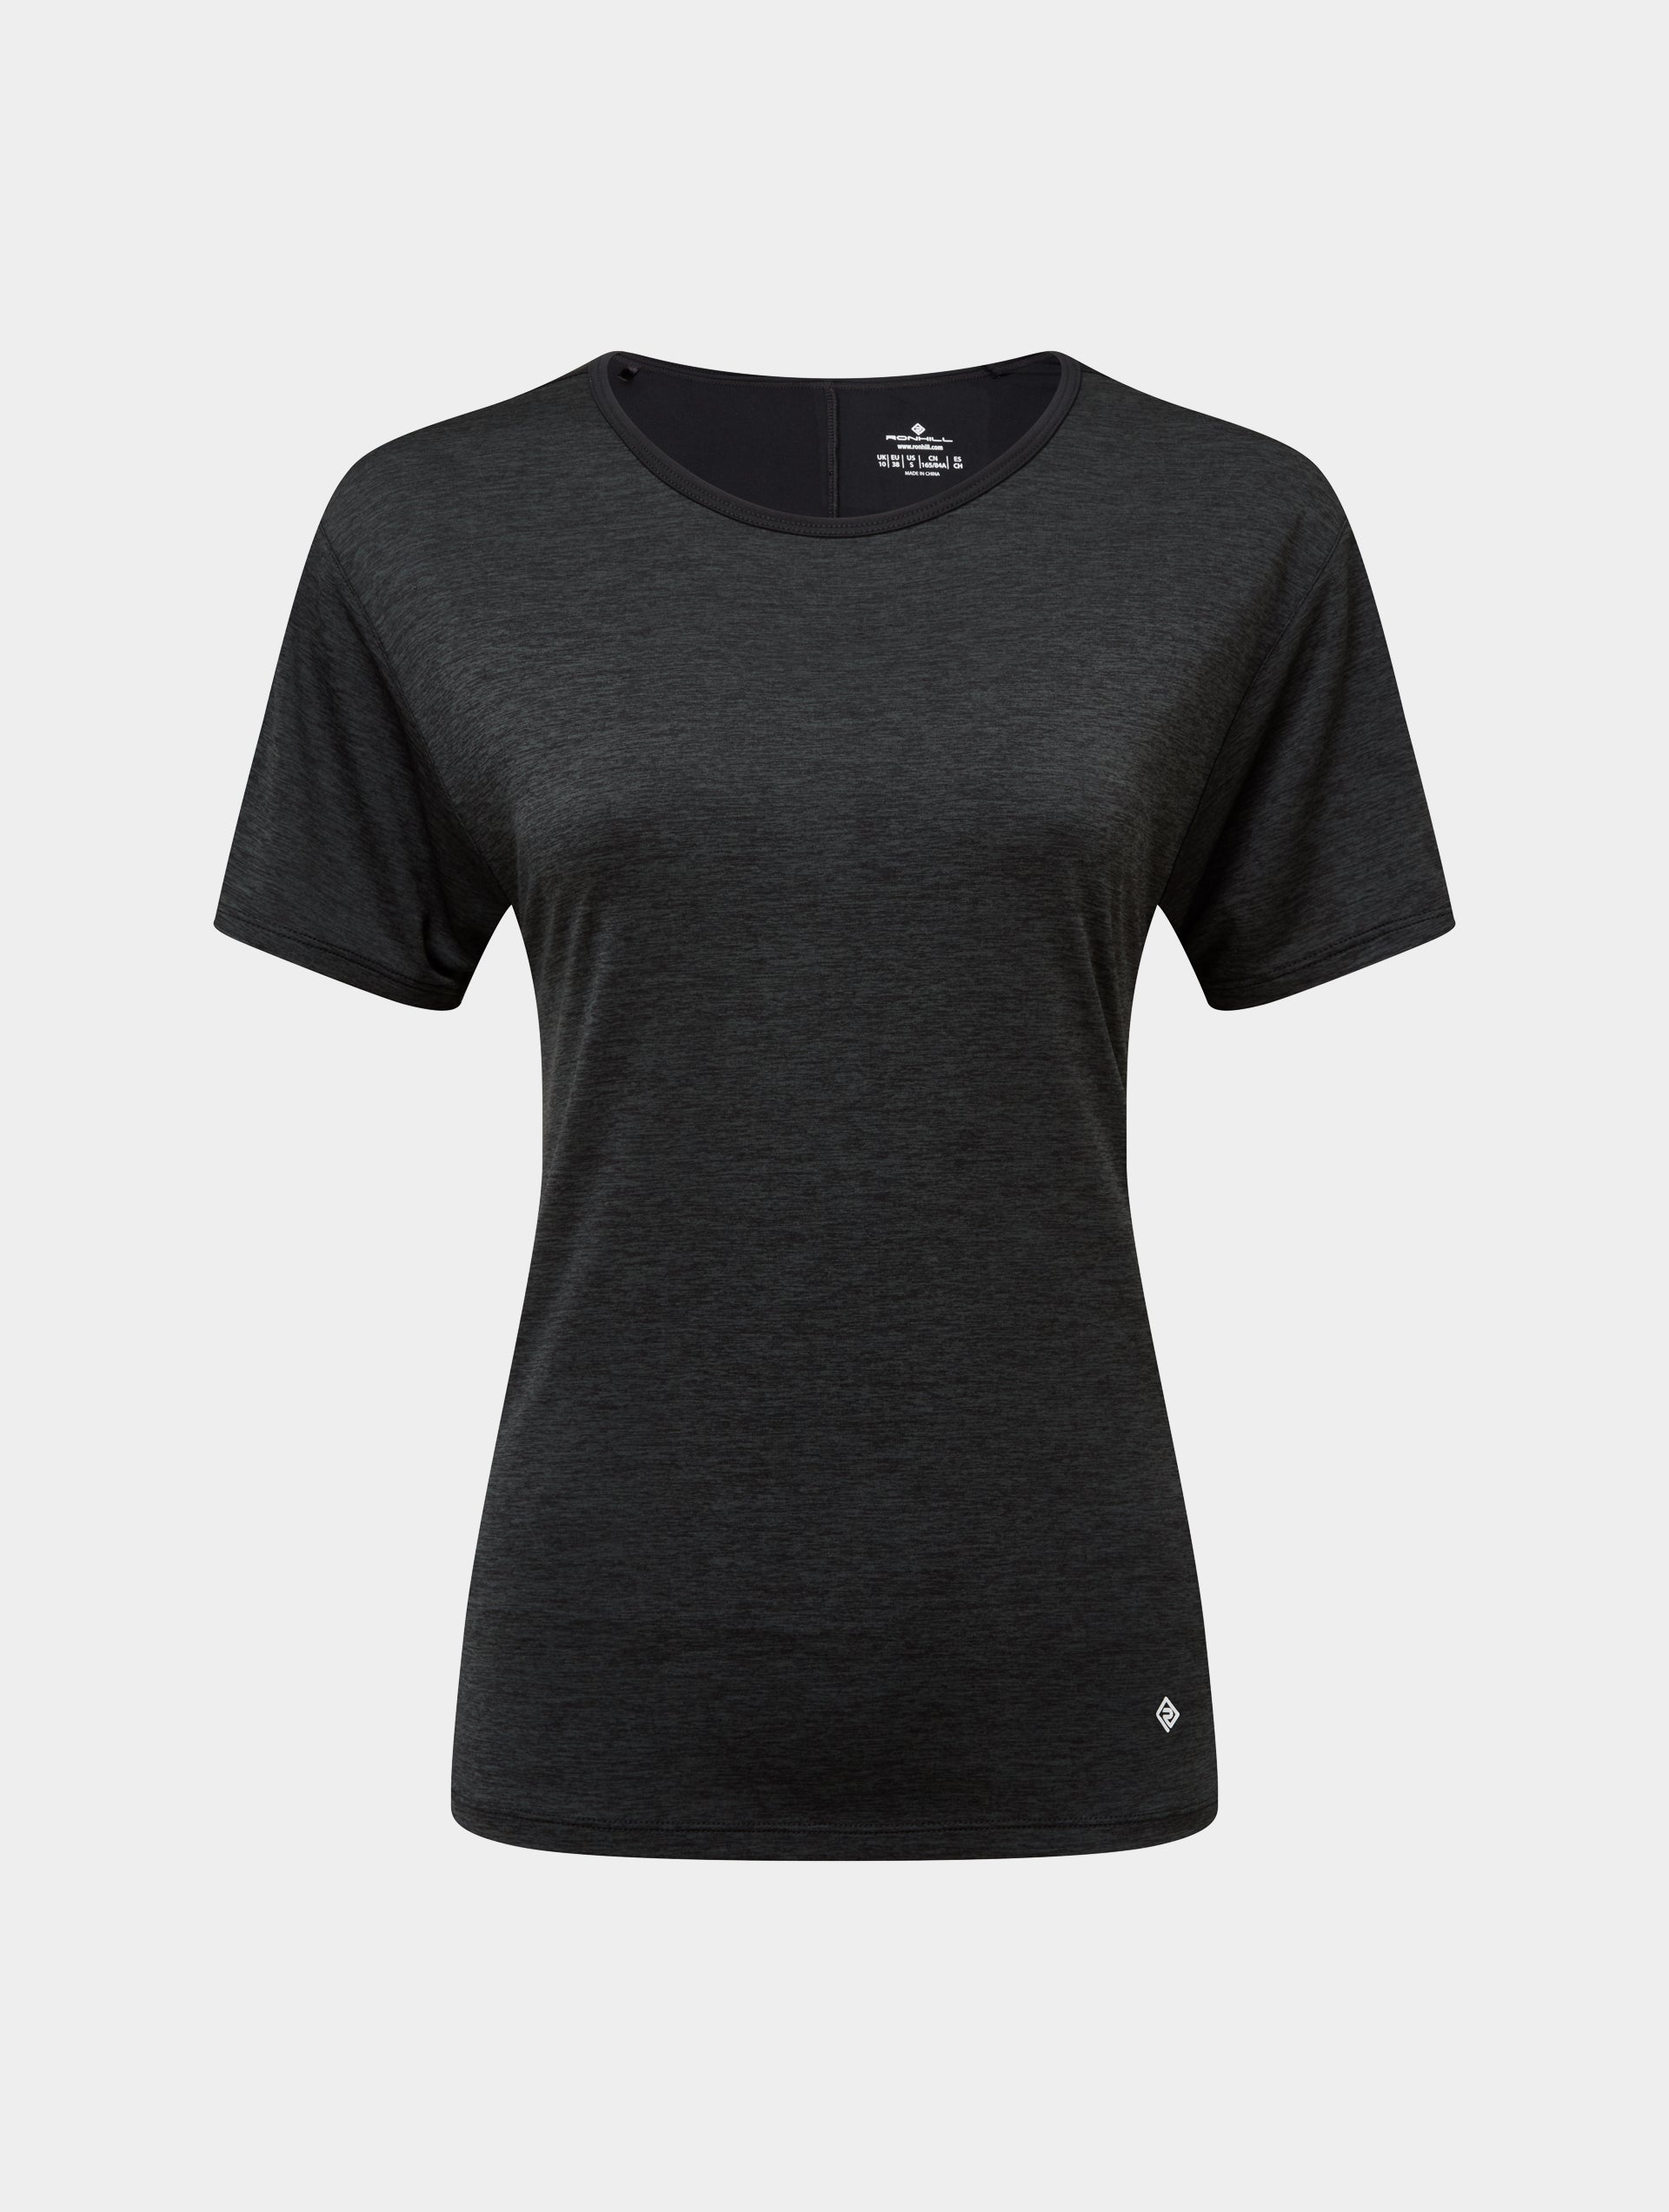 Women's Running T-Shirts